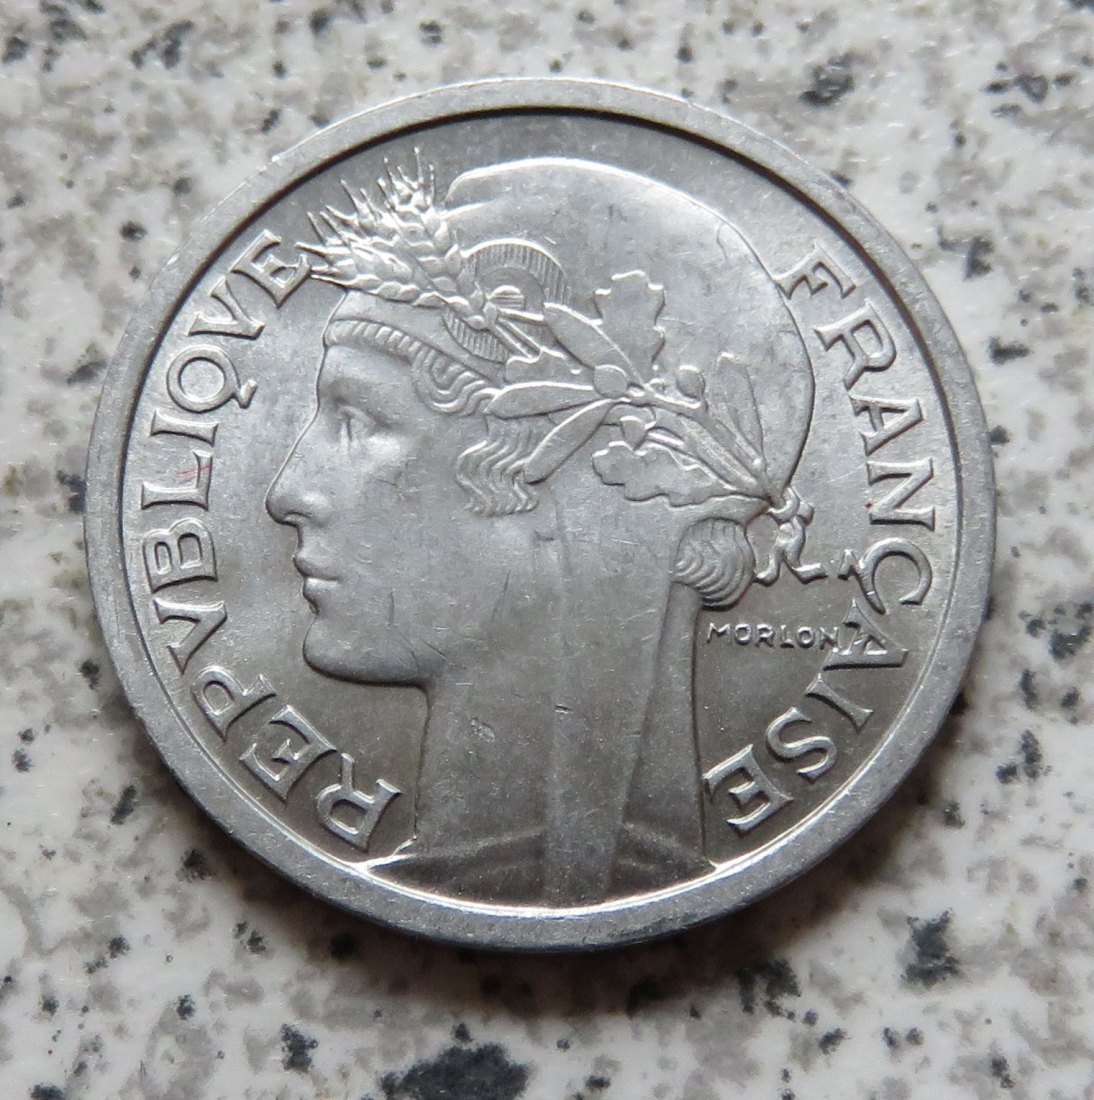  Frankreich 1 Franc 1959   